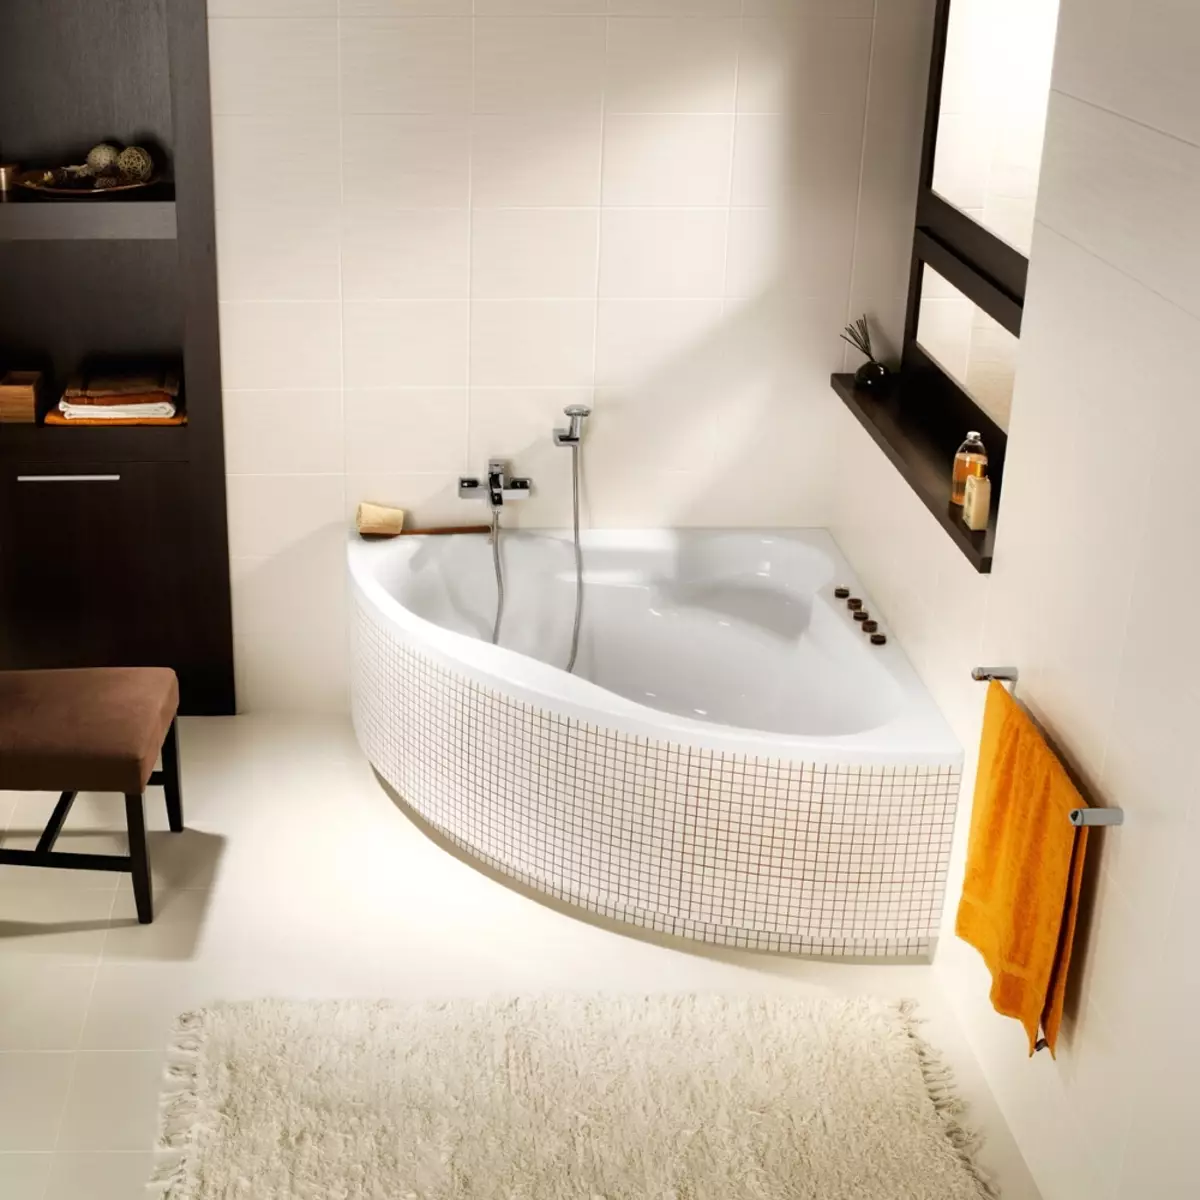 छोटे बाथटब: मिनी स्नान आकार। एक छोटा स्नान चुनने के लिए टिप्स, इंटीरियर में कॉम्पैक्ट स्नान के उदाहरण 10223_92